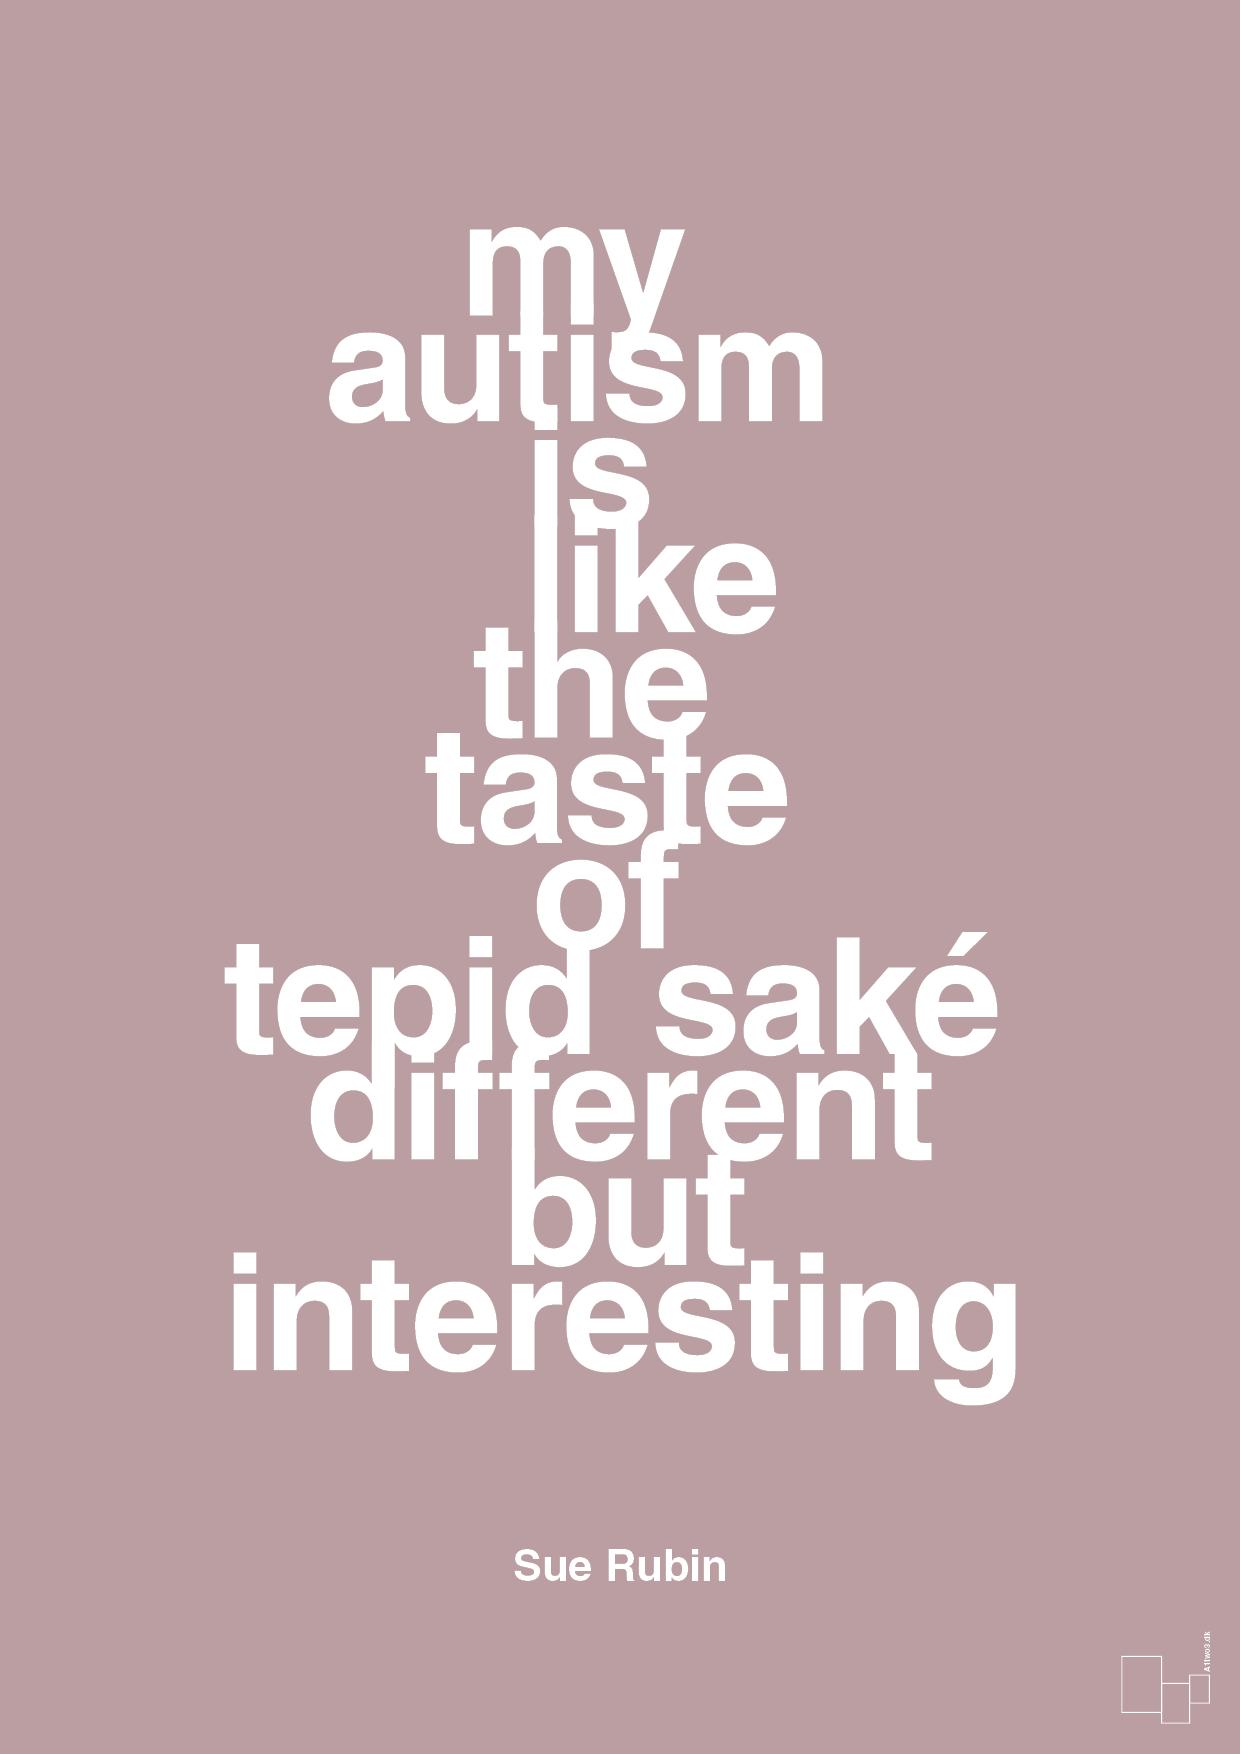 my autism is like the taste of tepid saké different but interesting - Plakat med Samfund i Light Rose